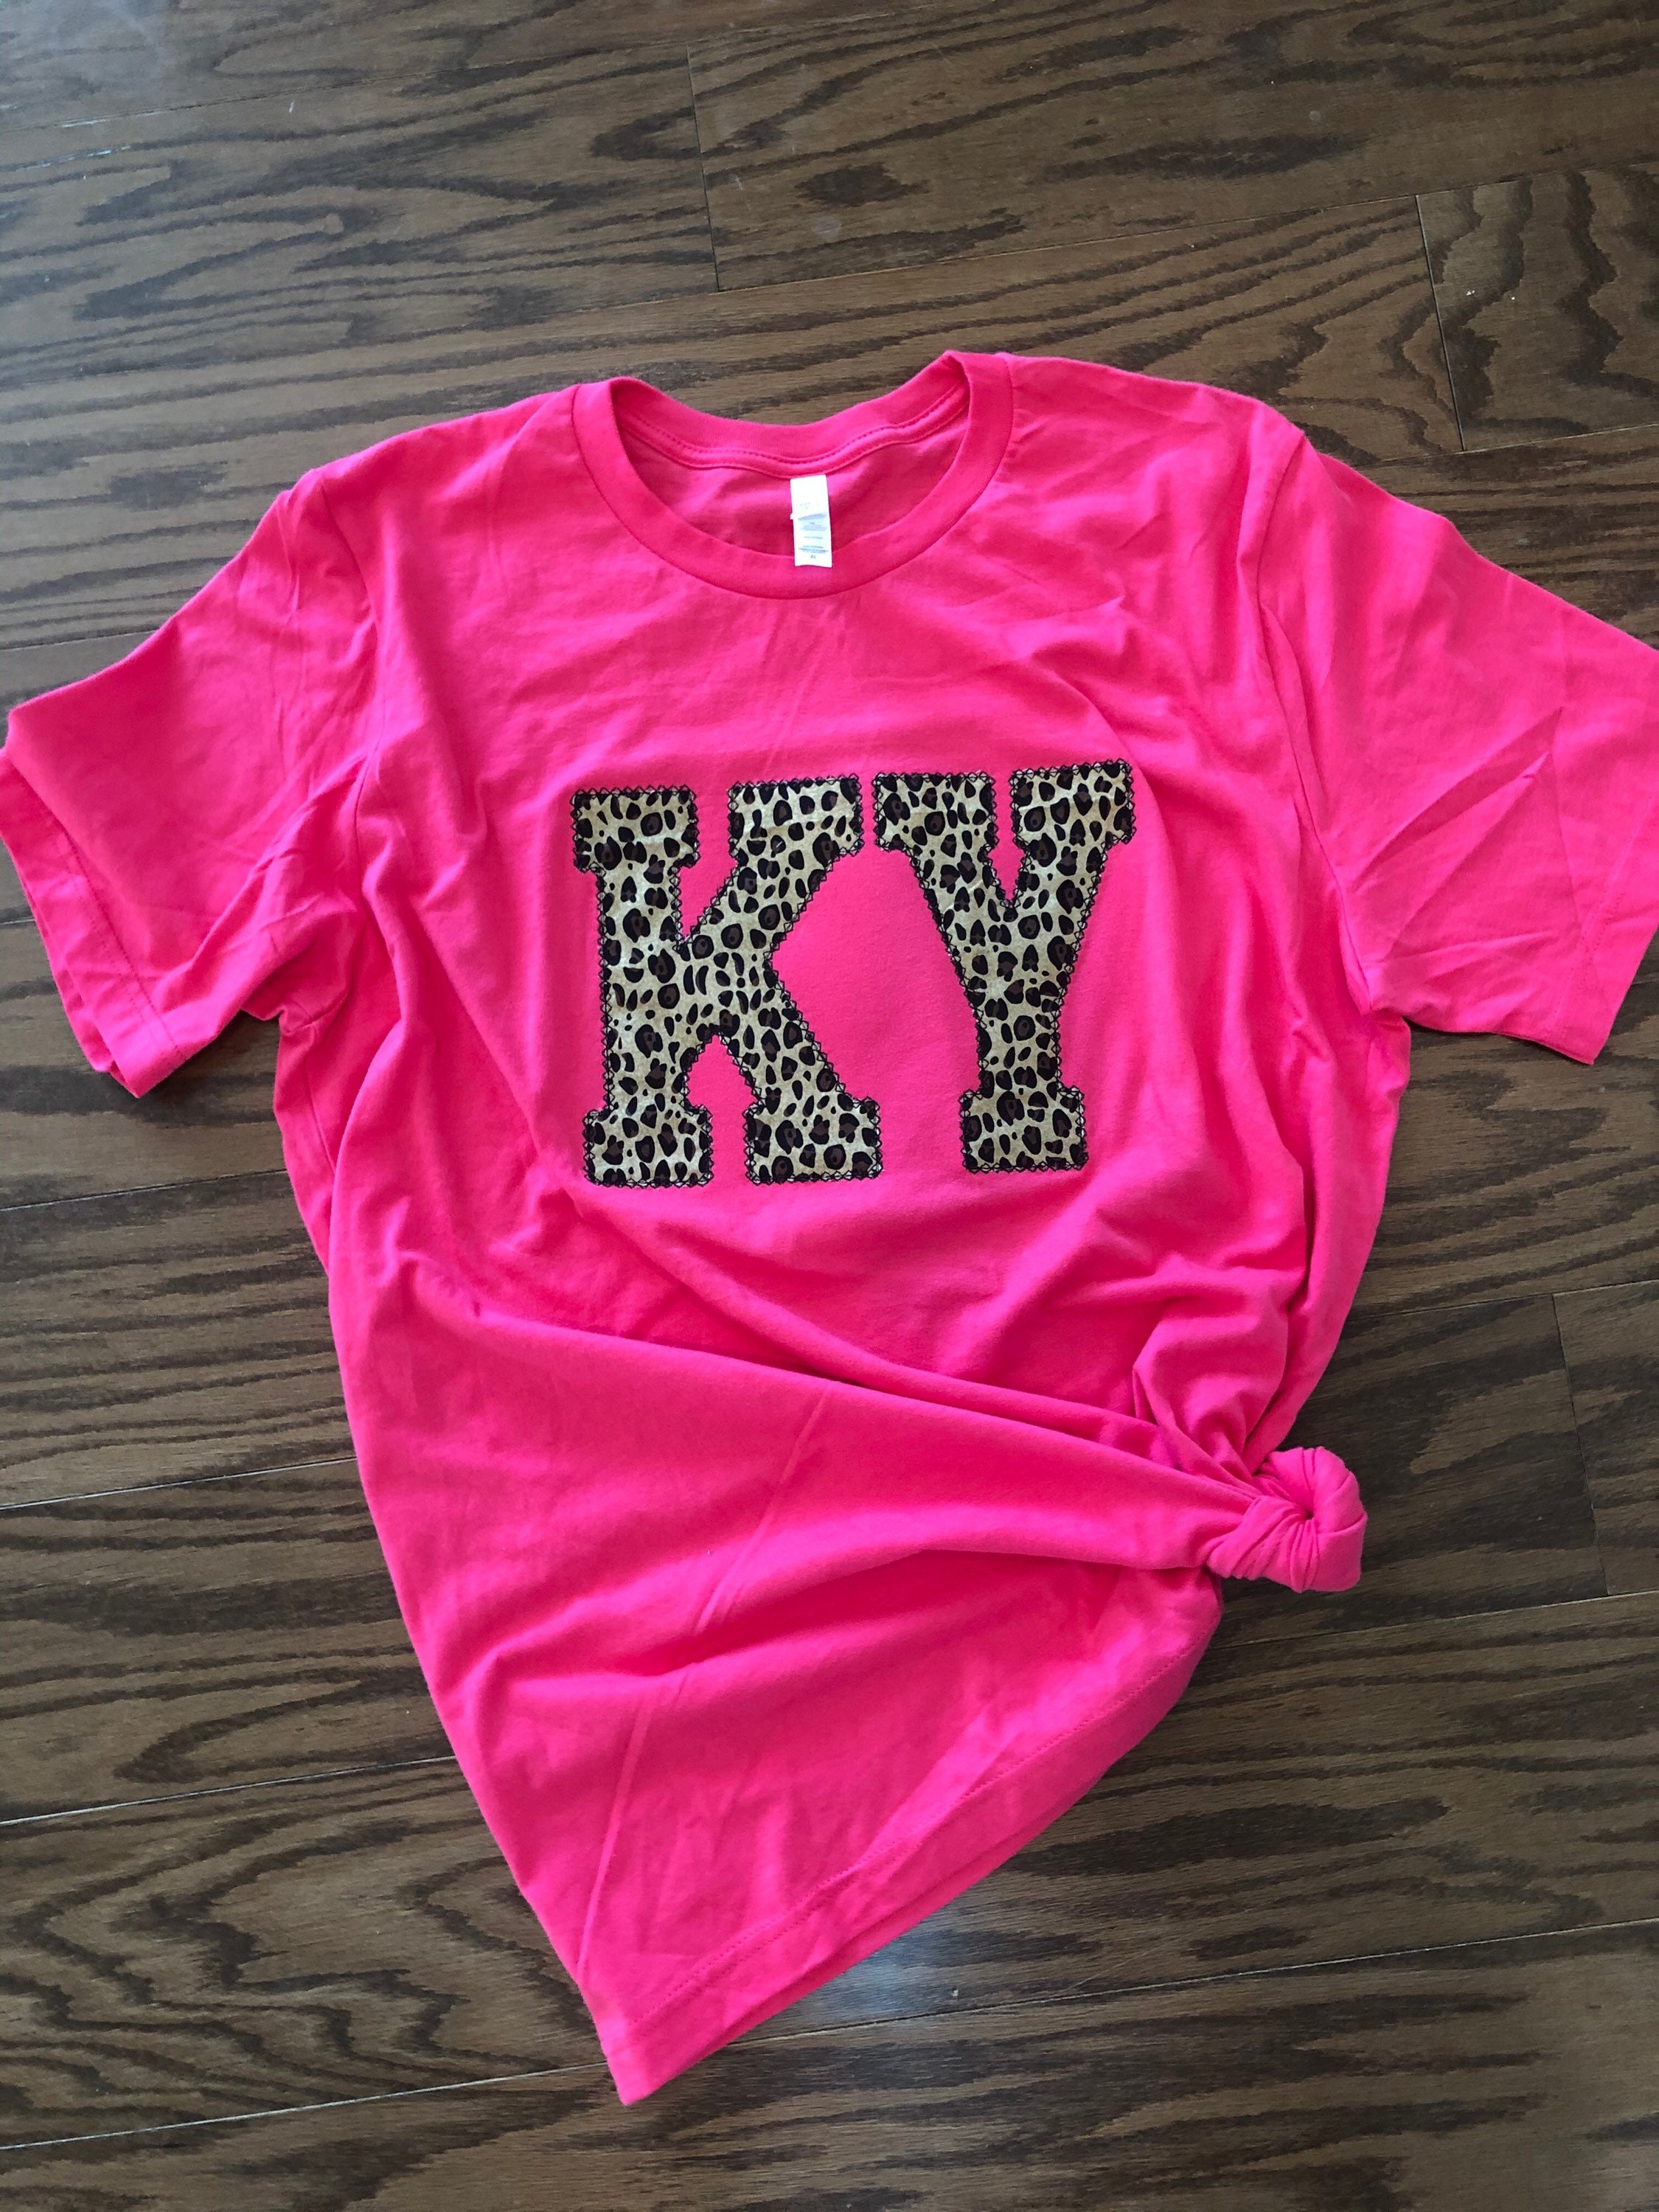 Louisville Slugger Tee Shirt Medium New Tags Kentucky Made In USA Pink